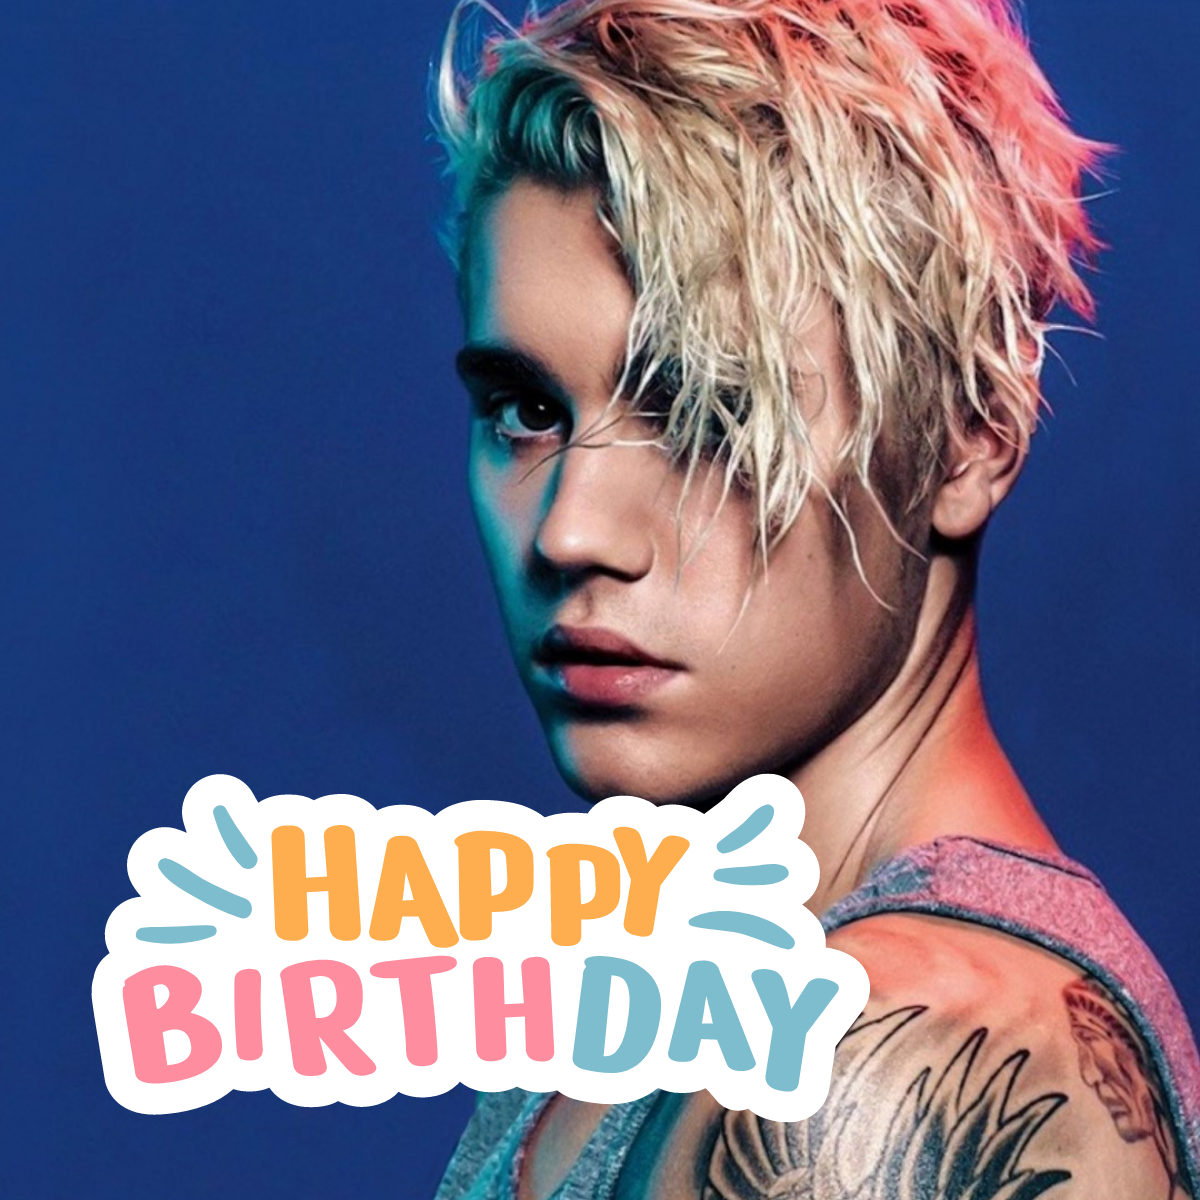 Justin Bieber Birthday Wishes